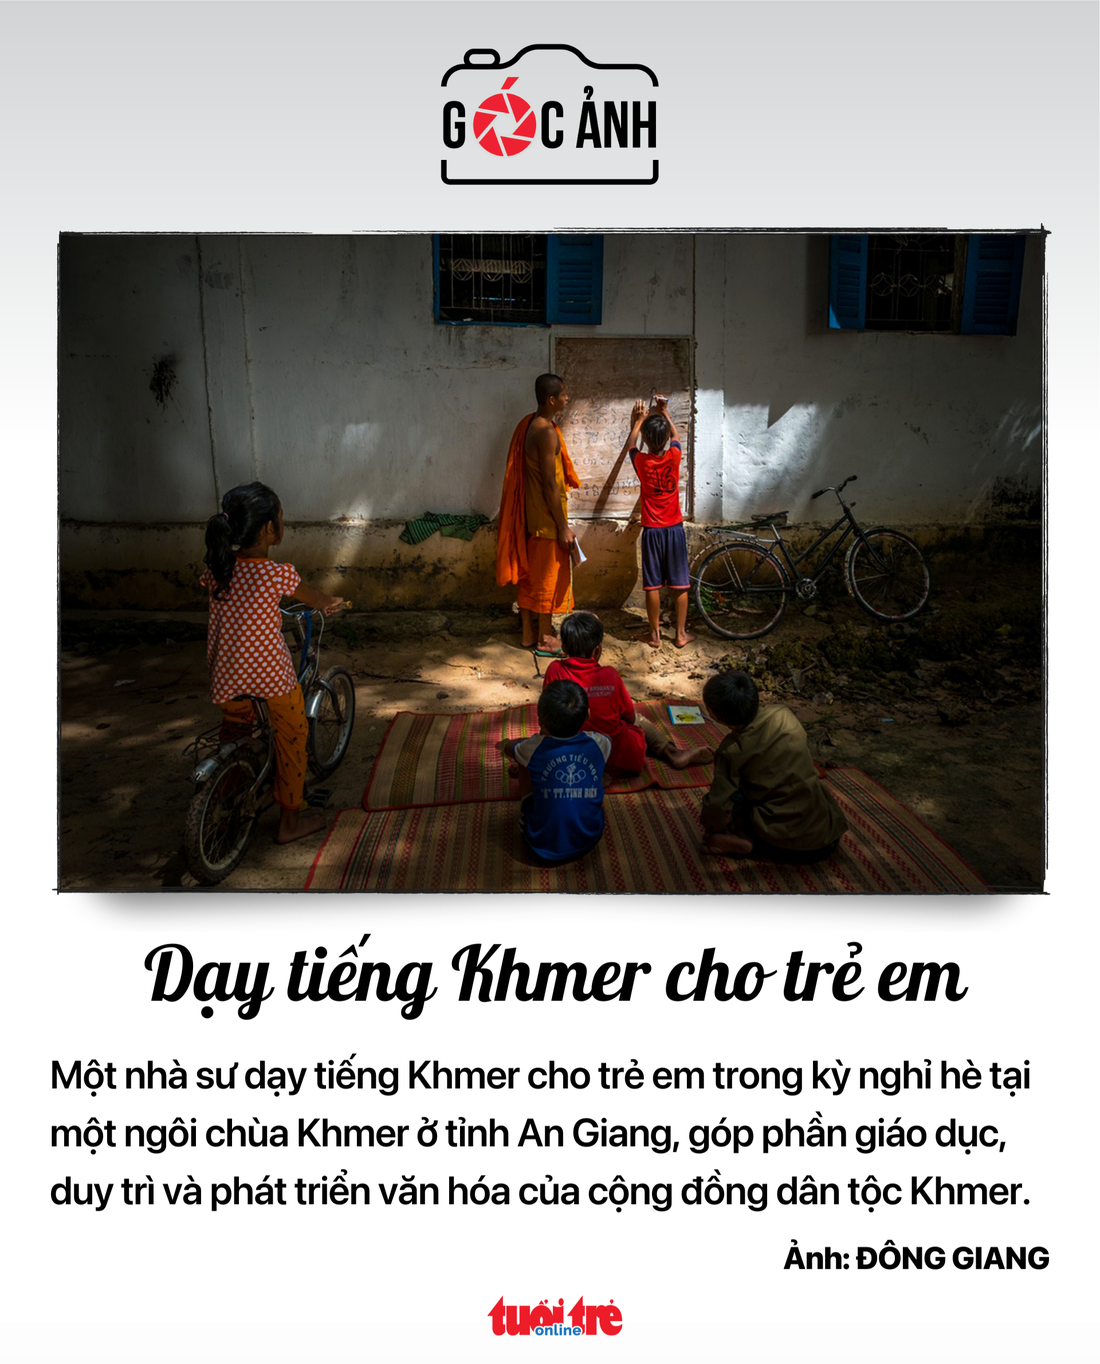 Dạy tiếng Khmer cho trẻ em - Ảnh: ĐÔNG GIANG